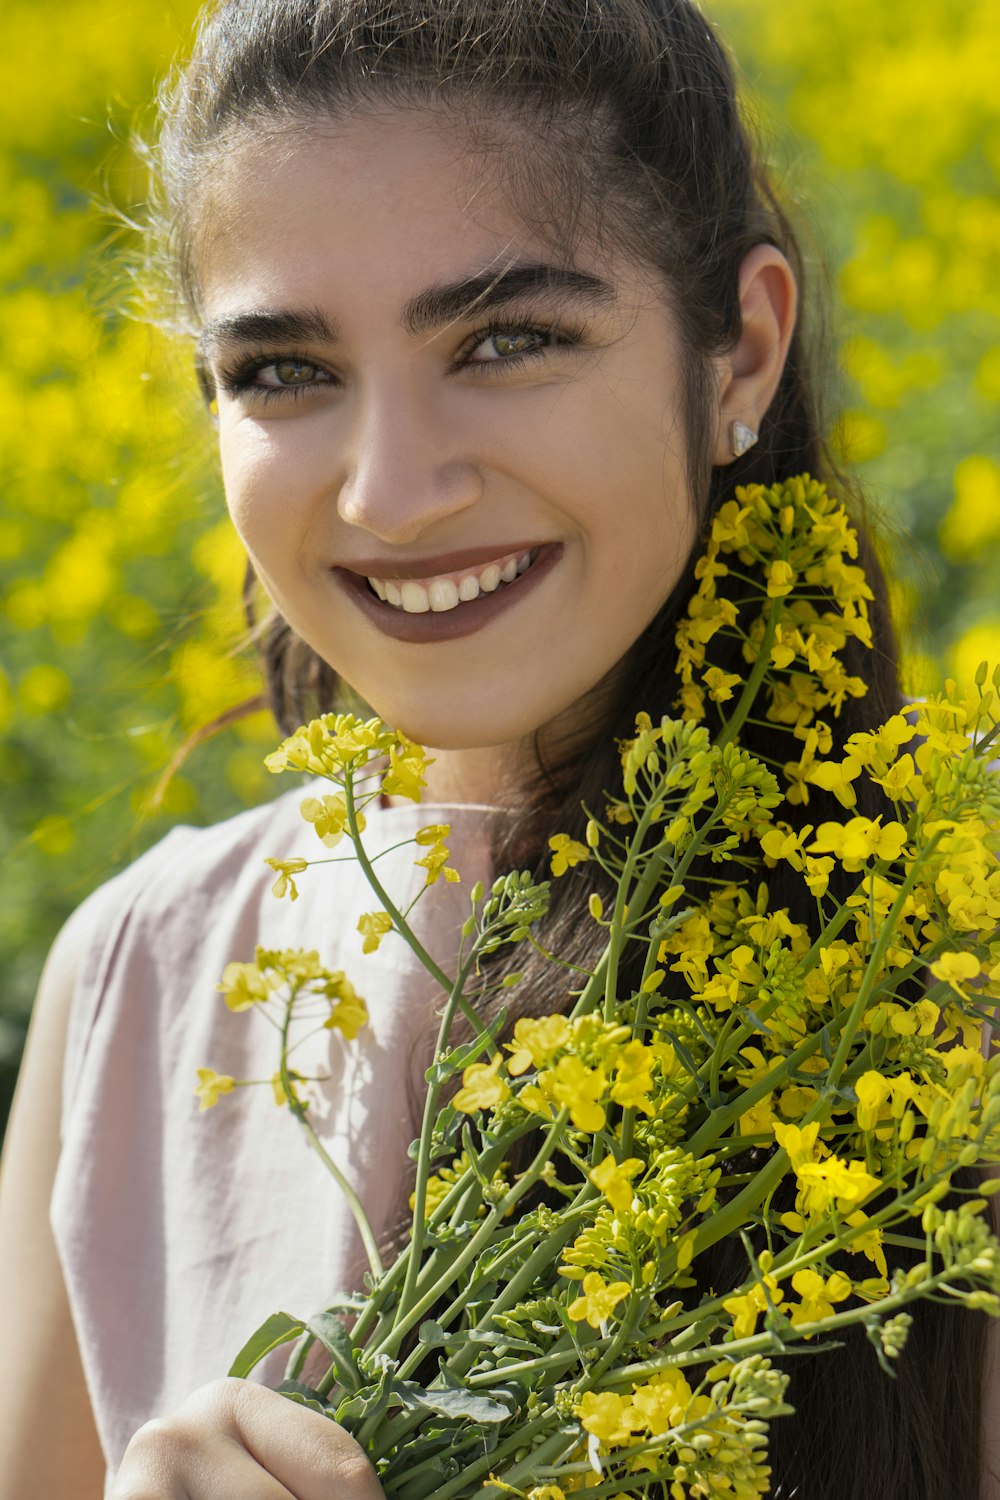 femme souriante en chemise blanche avec des fleurs jaunes sur sa tête